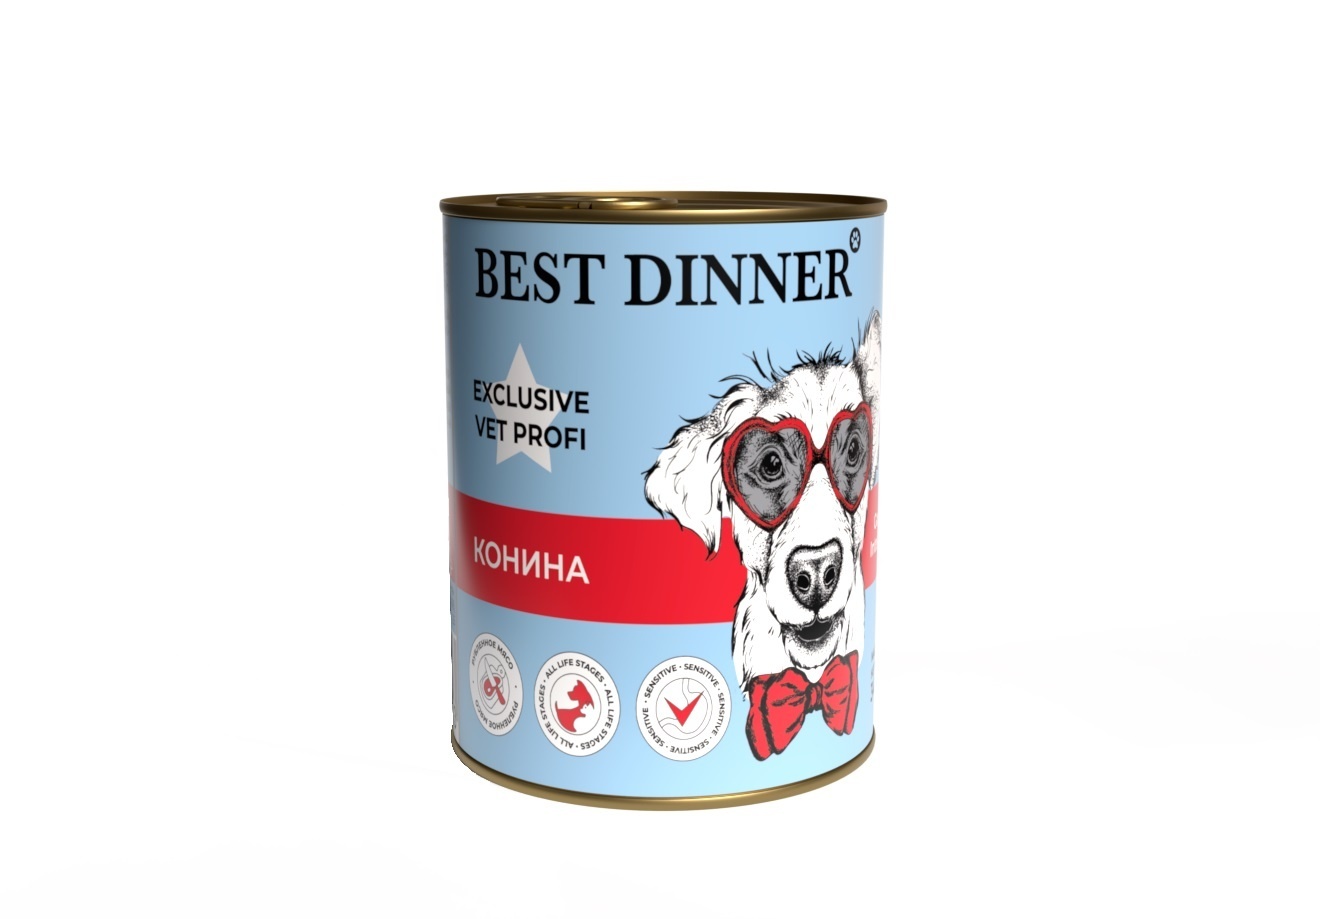 Best Dinner Best Dinner консервы Конина, паштет для собак с чувствительным пищеварением (340 г) best dinner best dinner гипоаллергенные консервы с кониной и рисом для собак всех пород 340 г